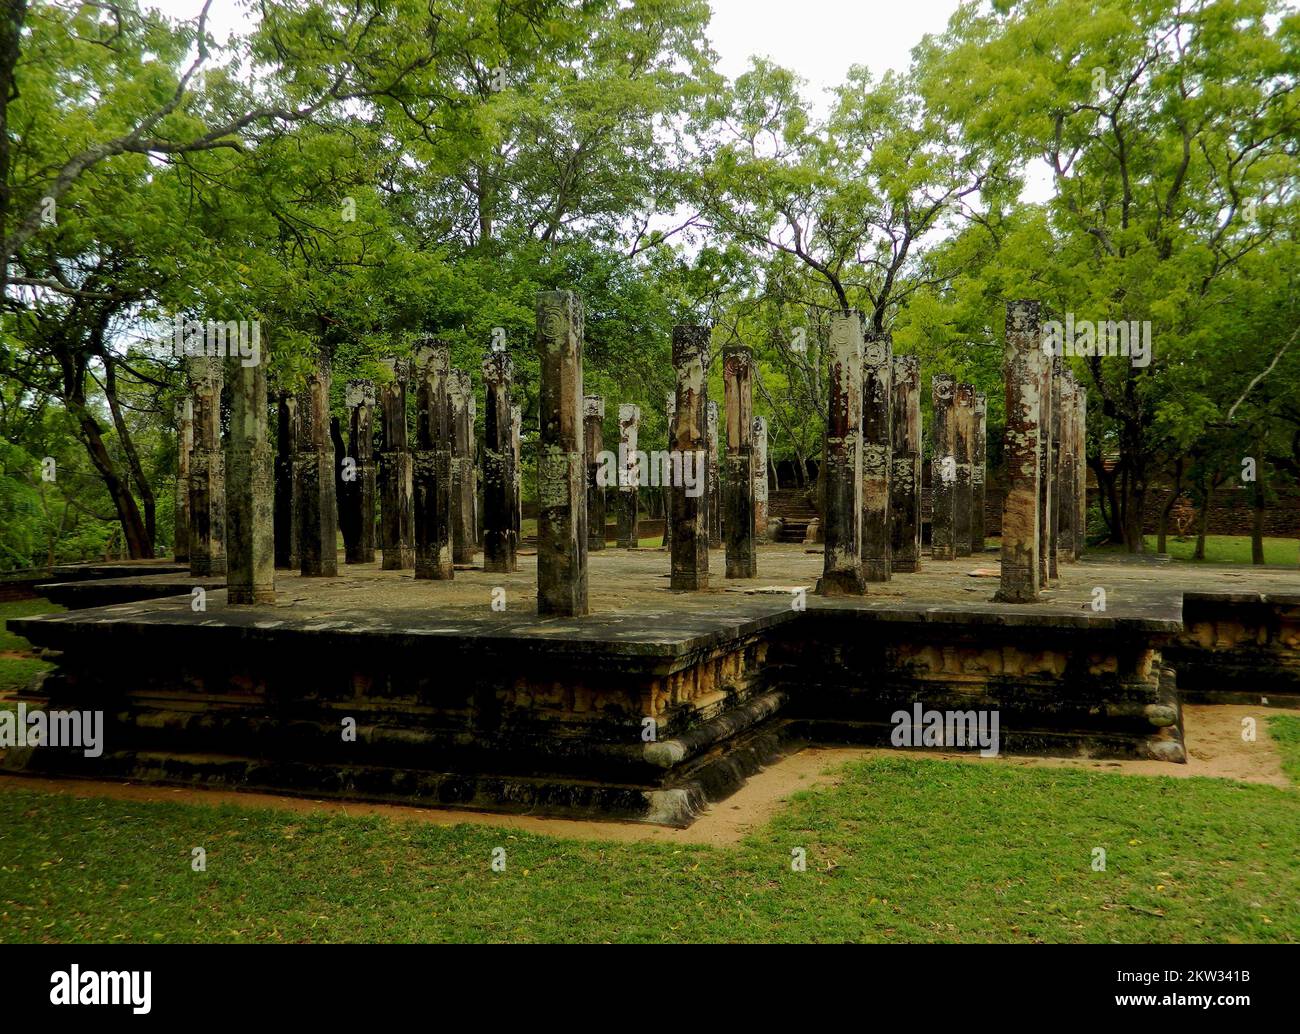 Polonnaruwa est le deuxième royaume de l'ancien Sri Lanka. Le roi Parakramabahu 4 a développé de nombreux wewas et temples et a établi la subsistance du pays. La maison d'images Polonnaruwa Lankathilaka est une maison d'images de Bouddha monolithique également construite par le roi Parakramabahu en briques et les murs extérieurs sont couverts de dessins et sculptures élaborés. L'époque dorée fut ruinée par le roi Maga en envahissant et détruisant les temples et les sanctuaires du royaume. Polonnaruwa, Sri Lanka. Banque D'Images